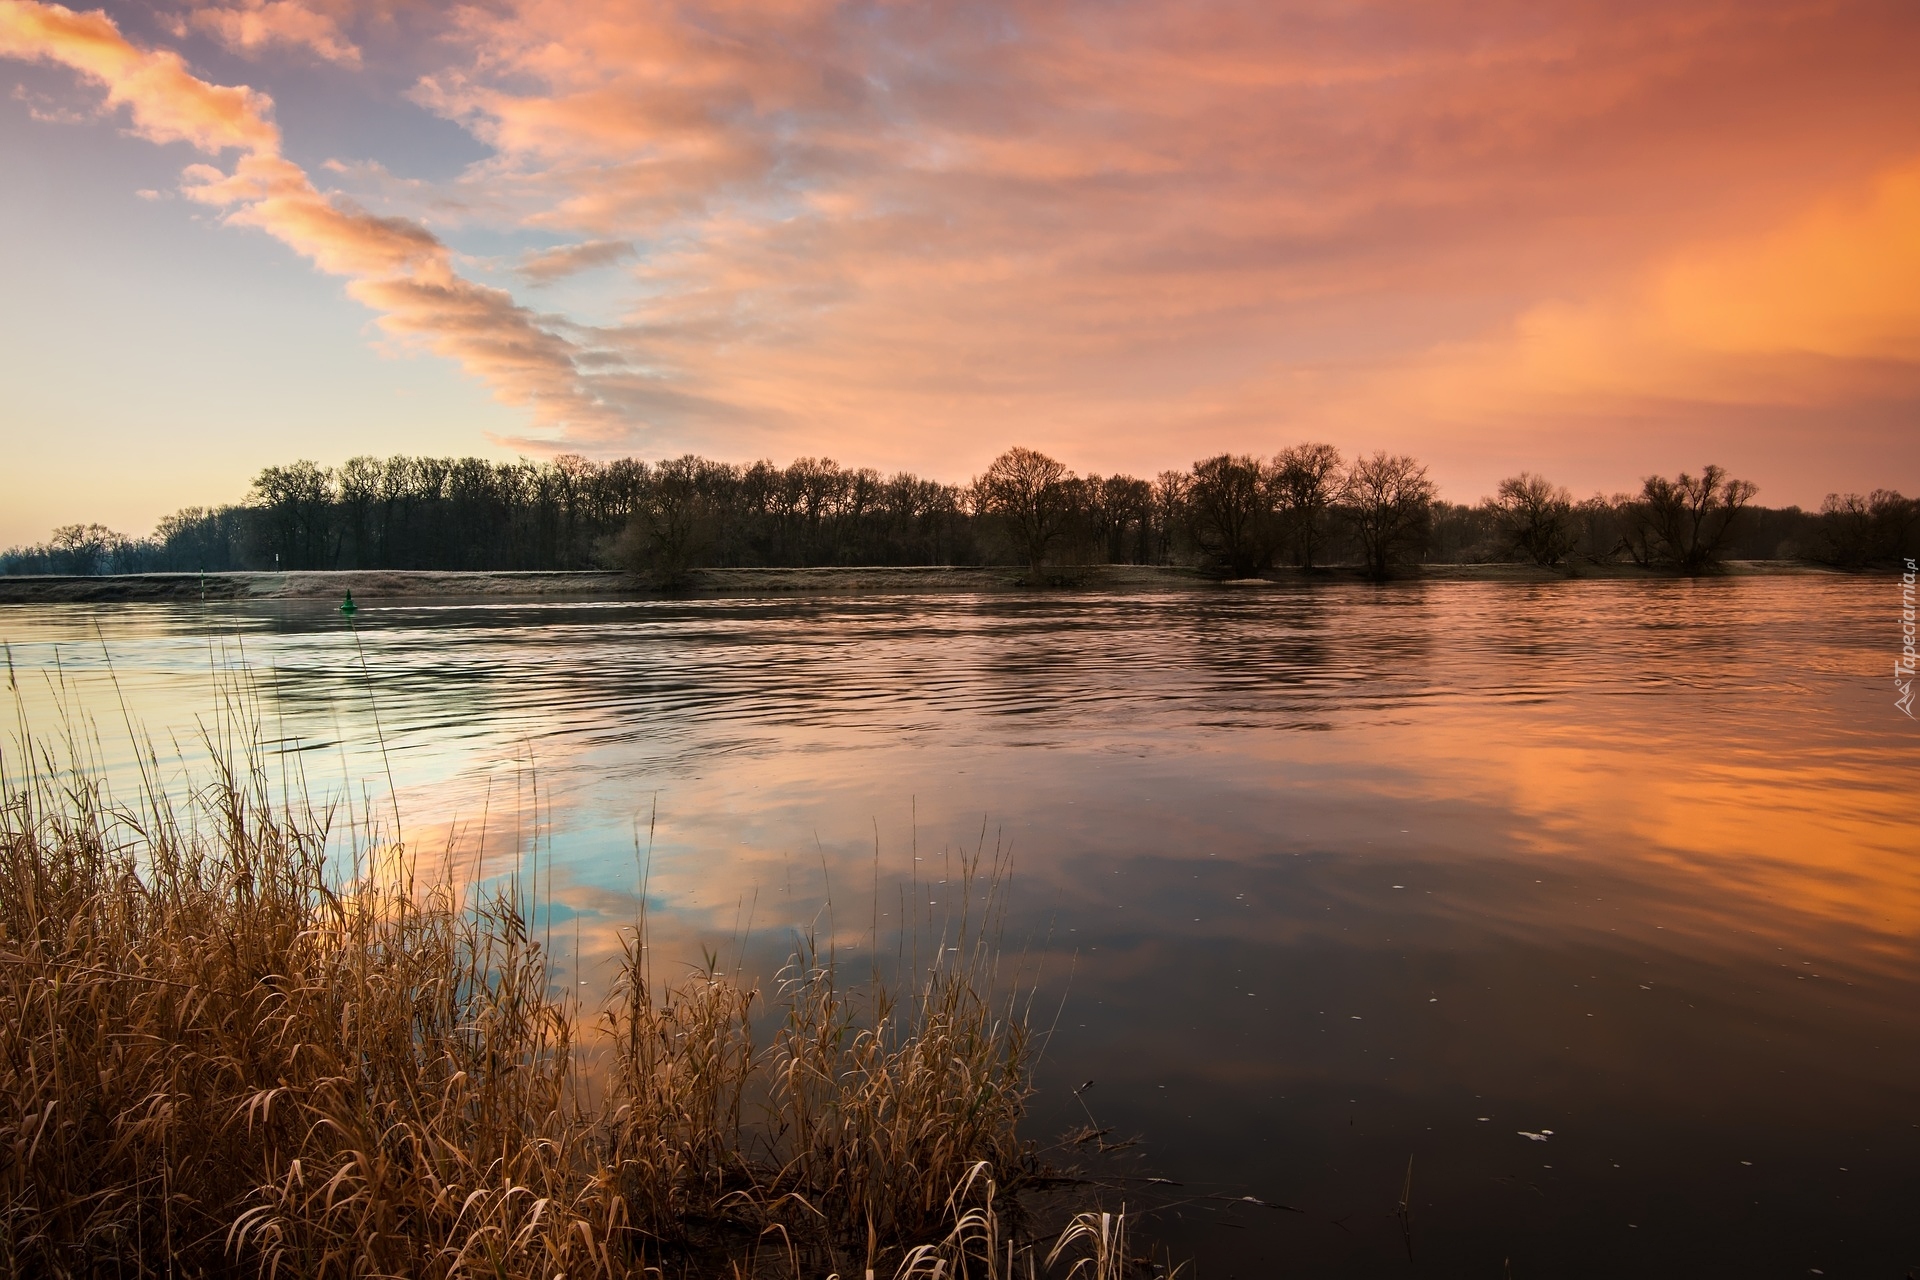 Rzeka Łaba, Drzewa, Wschód słońca, Niemcy